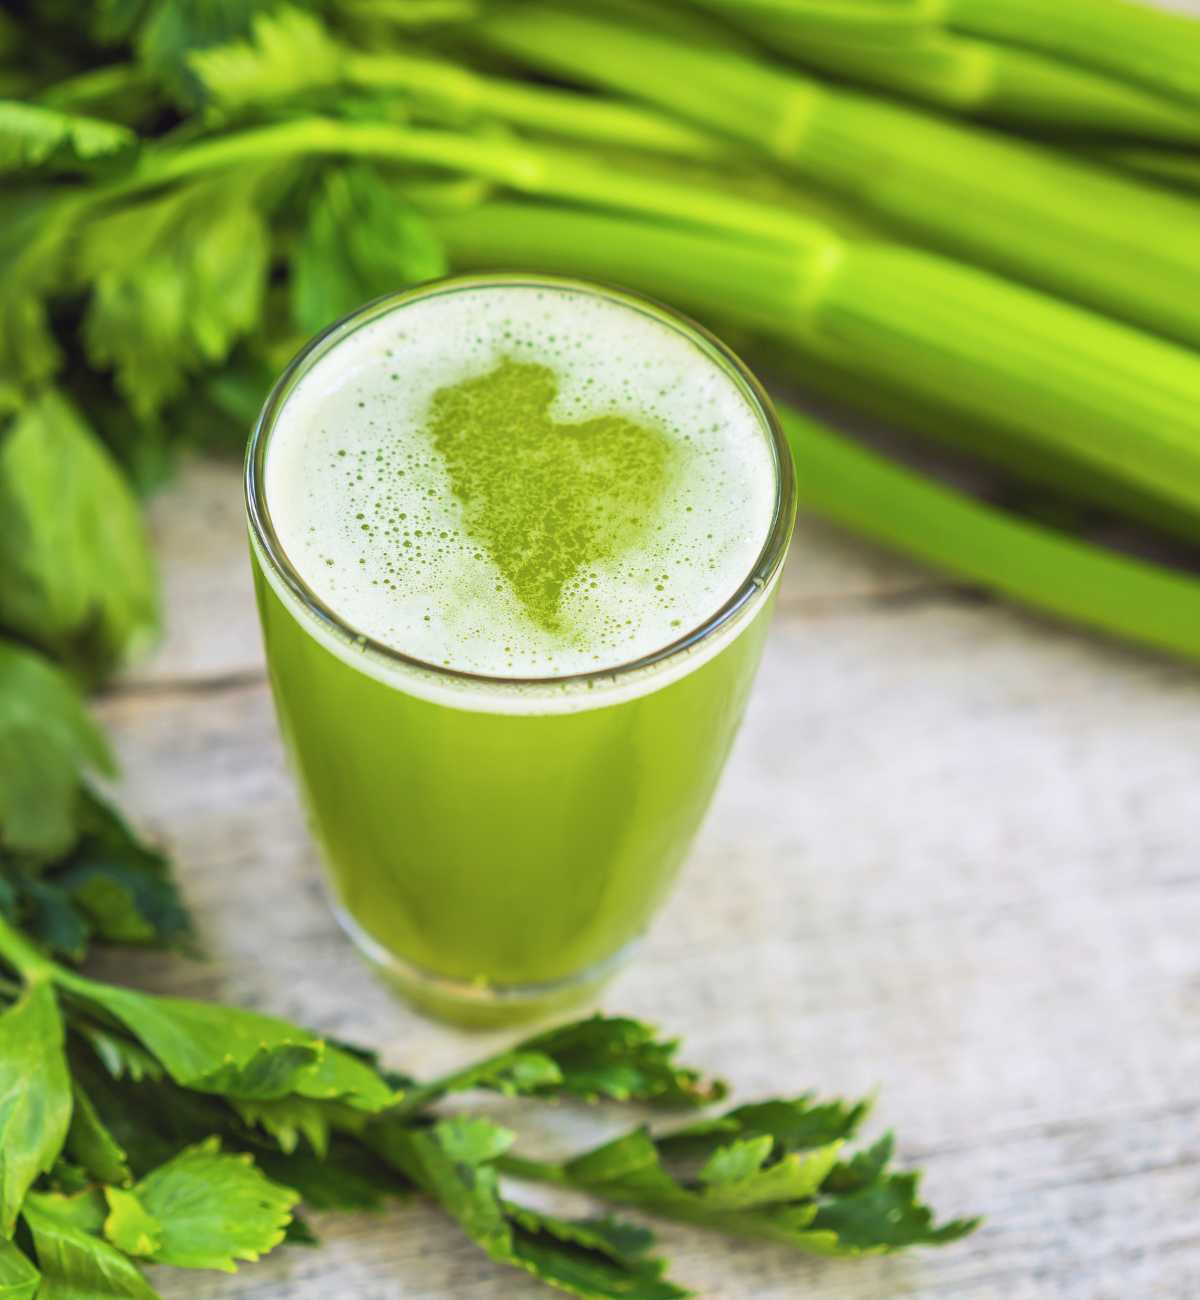 Celery juice close up shot